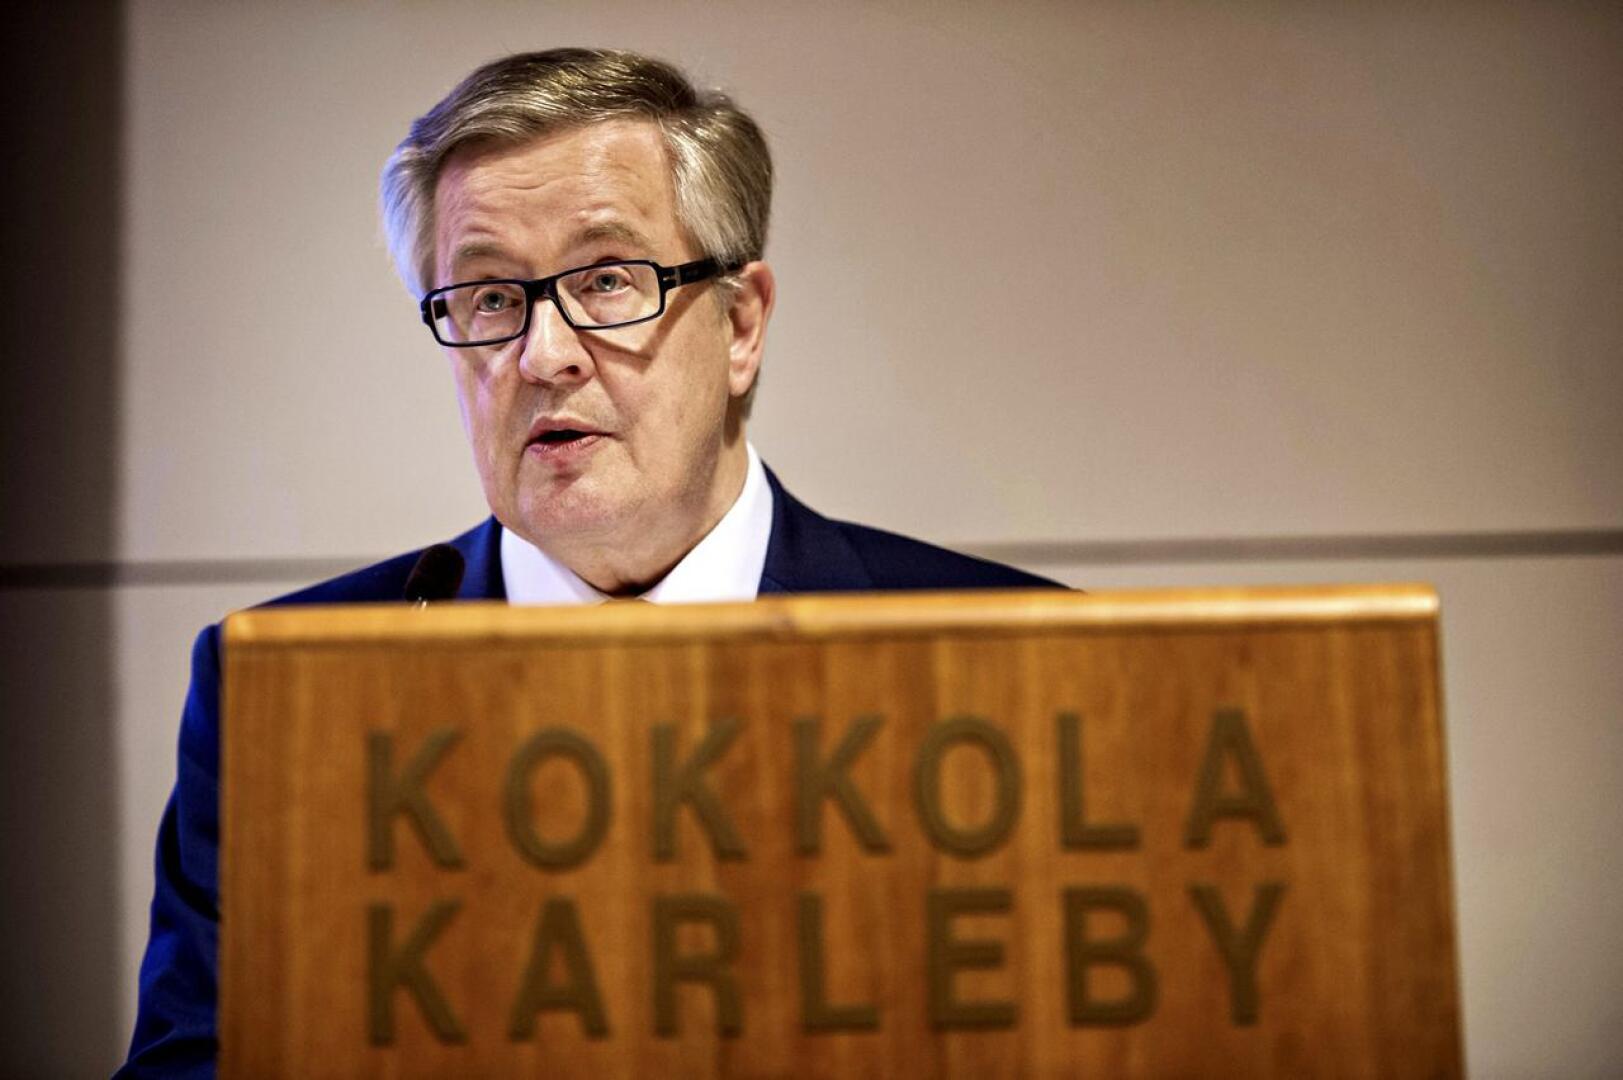 Kokkolan kippari. Antti Isotalus aloitti Kokkolan kaupunginjohtajana vuonna 1991.